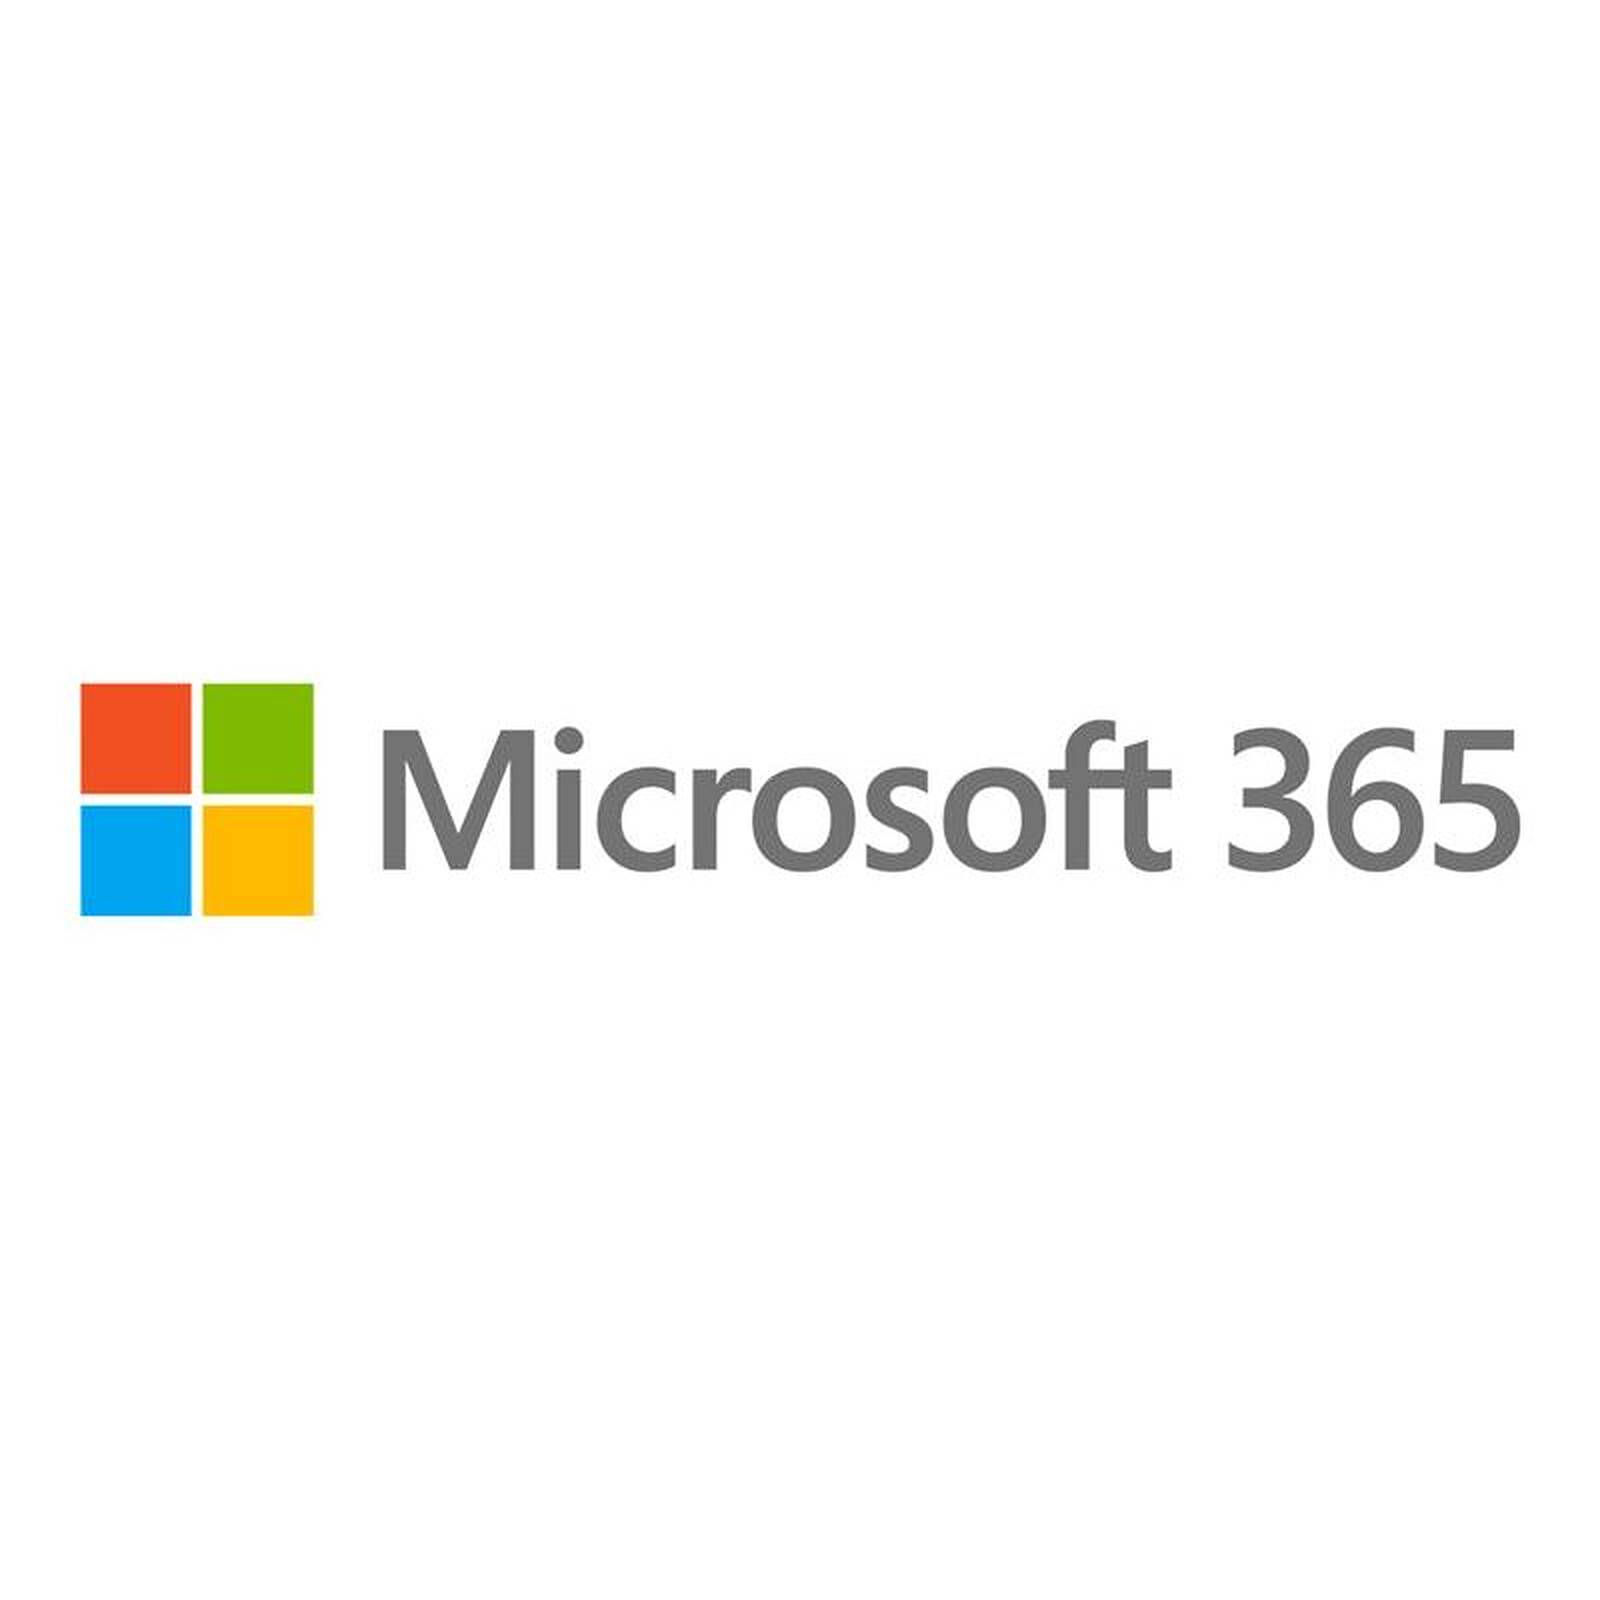 Microsoft 365 Hogar - Programa de oficina Microsoft en LDLC | ¡Musericordia!